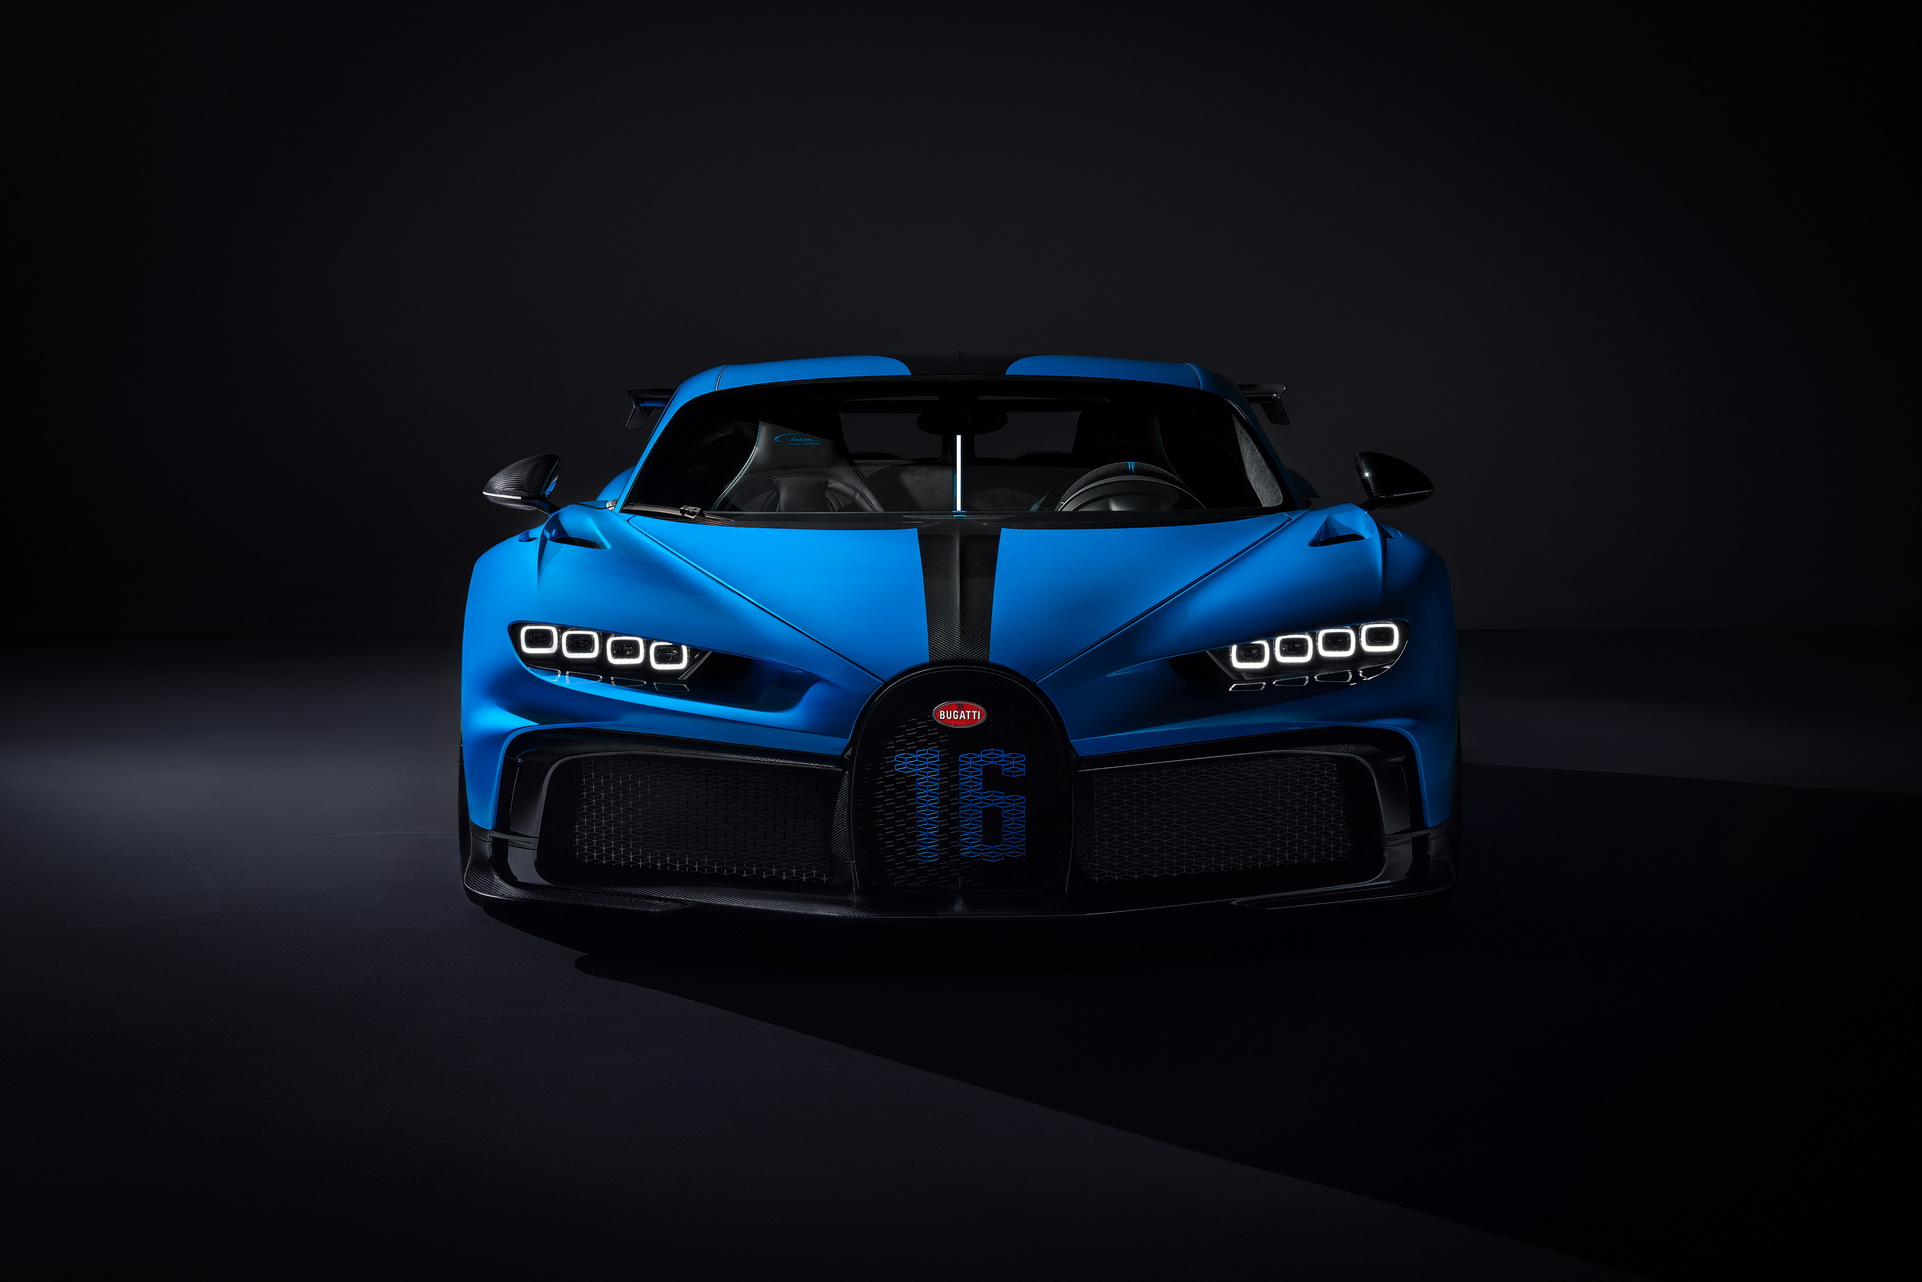 Giá xe Bugatti Chiron Pur Sport - Đáng để đầu tư cho sự tiện nghi và trải nghiệm lái xe tuyệt vời. Chúng ta đang nói về một siêu phẩm đích thực và giá trị của nó sẽ khiến bạn cảm thấy ấn tượng từ lần đầu tiên nhìn thấy nó.